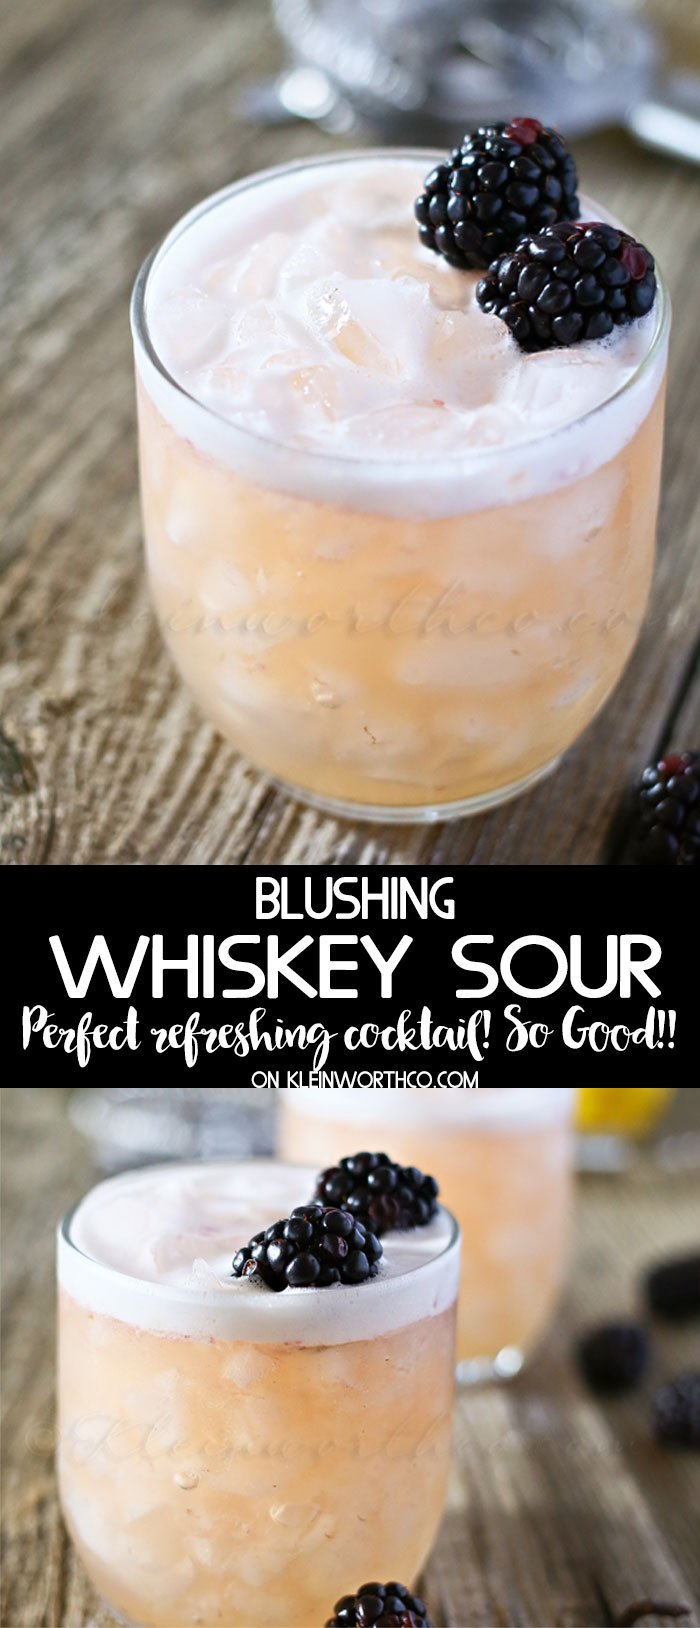 Blushing Whiskey Sour